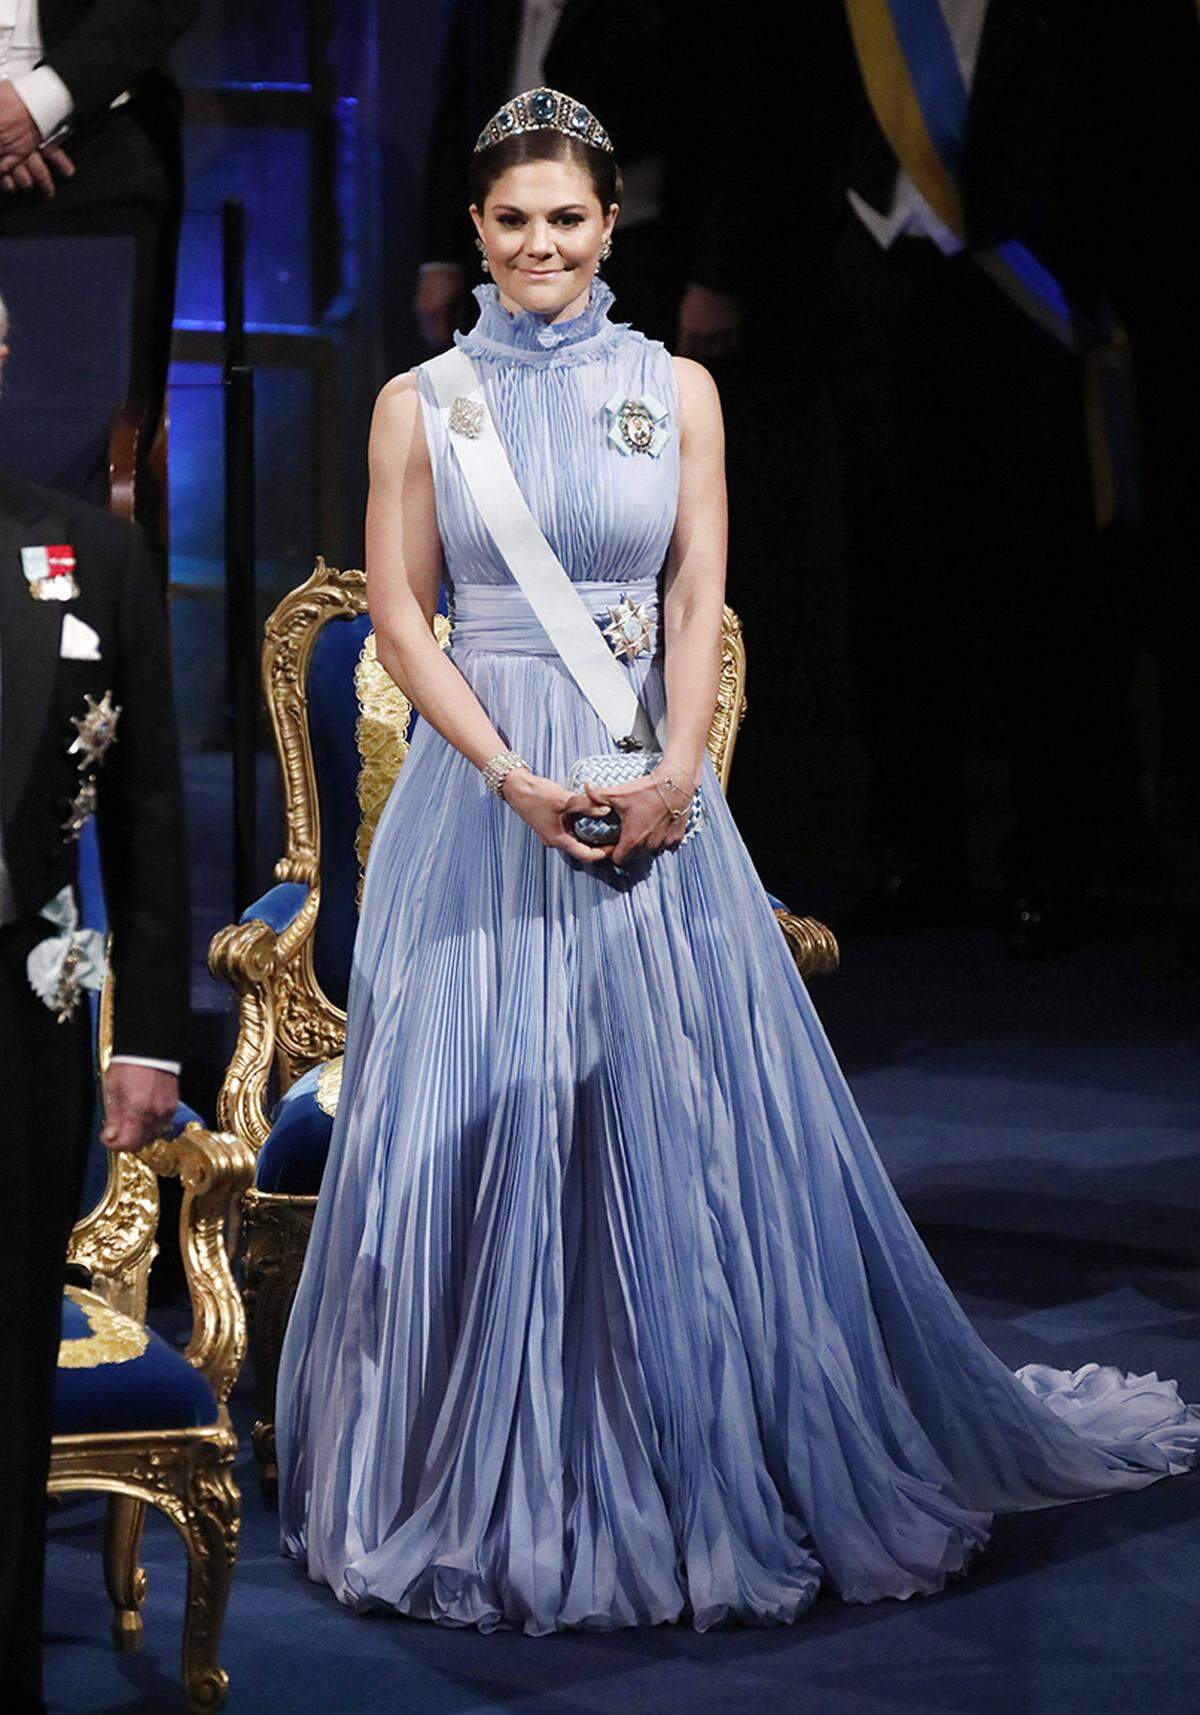 Kronprinzessin Victoria hatte bei der Nobel-Gala aber in ihrer Robe von Jennifer Blom ohnehin den großen Auftritt gebucht. Das fliederfarbene plissierte Kleid mit hohem Kragen passt tadellos in die Reihe dramatischer Outfits, die Victoria traditionellerweise zu dem Anlass wählt.